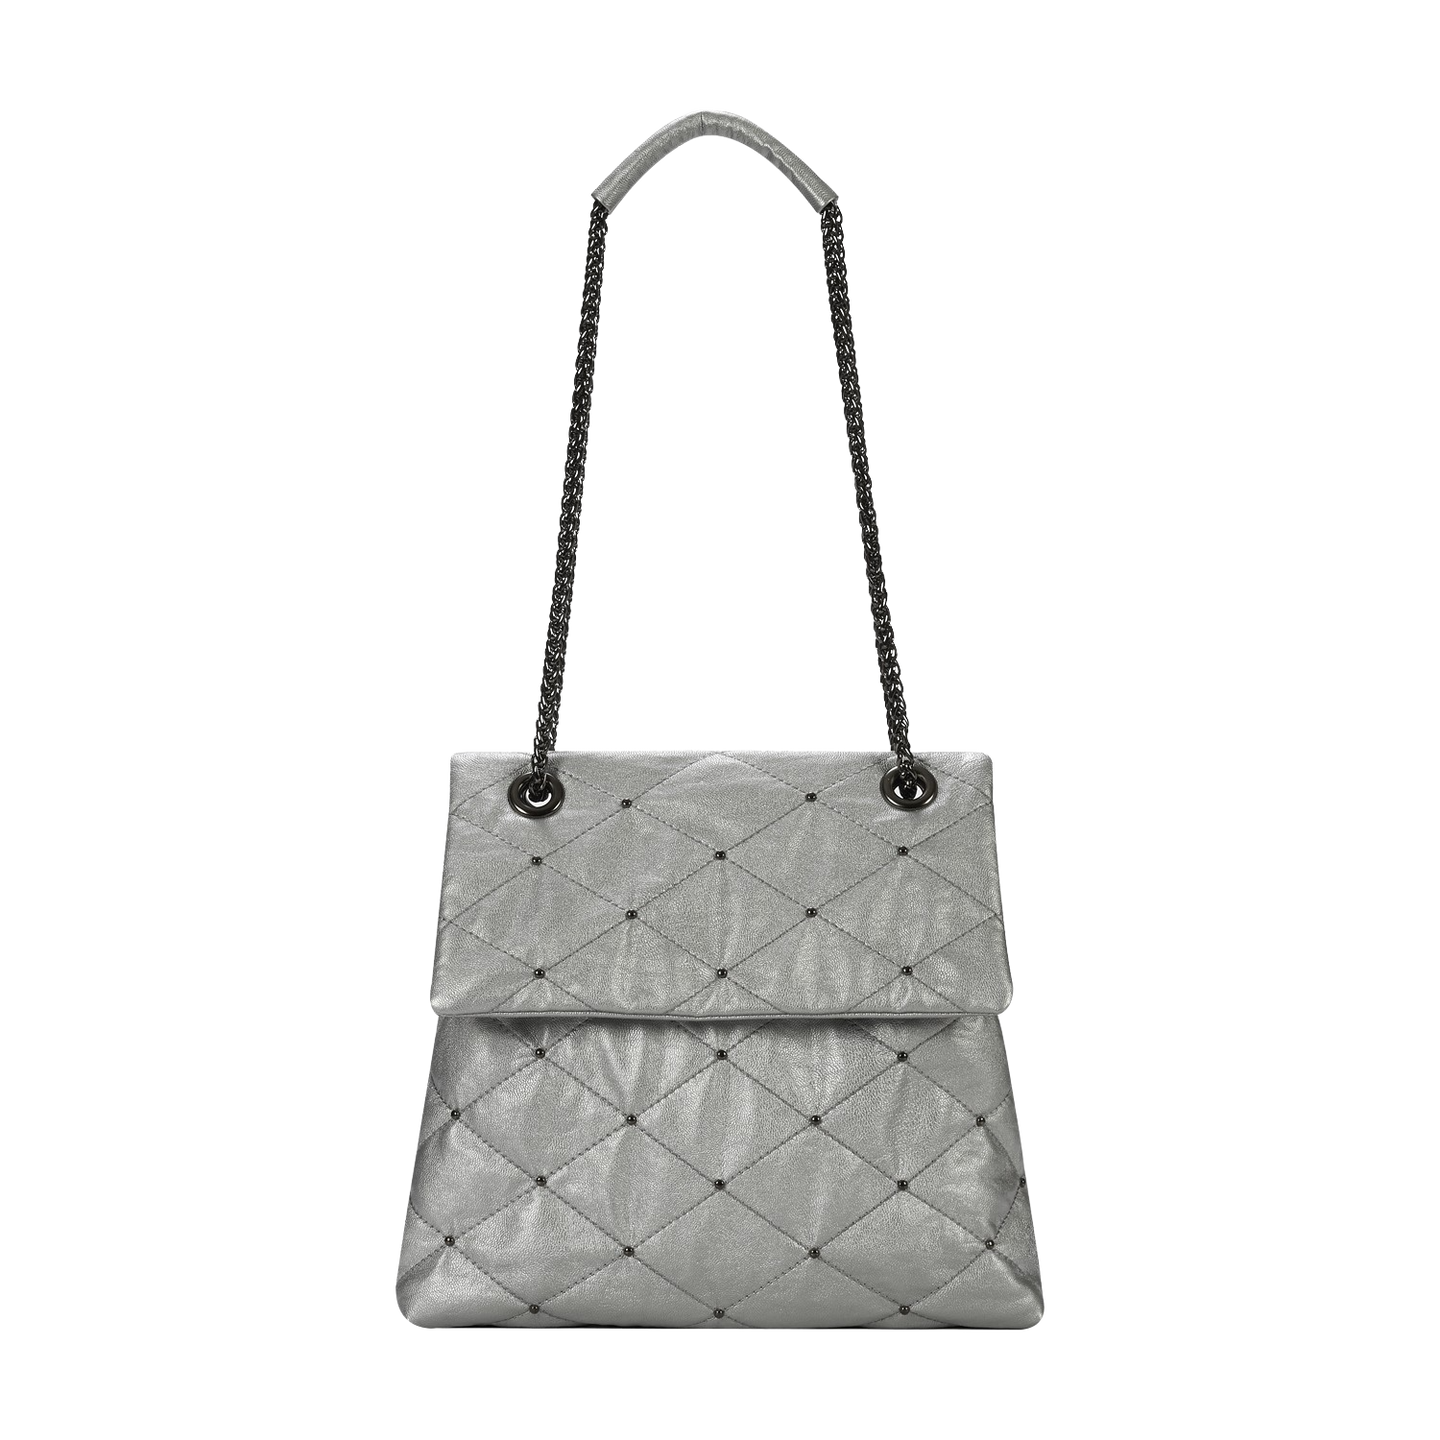 KWANI Lozenge Small Silver Studded Bag